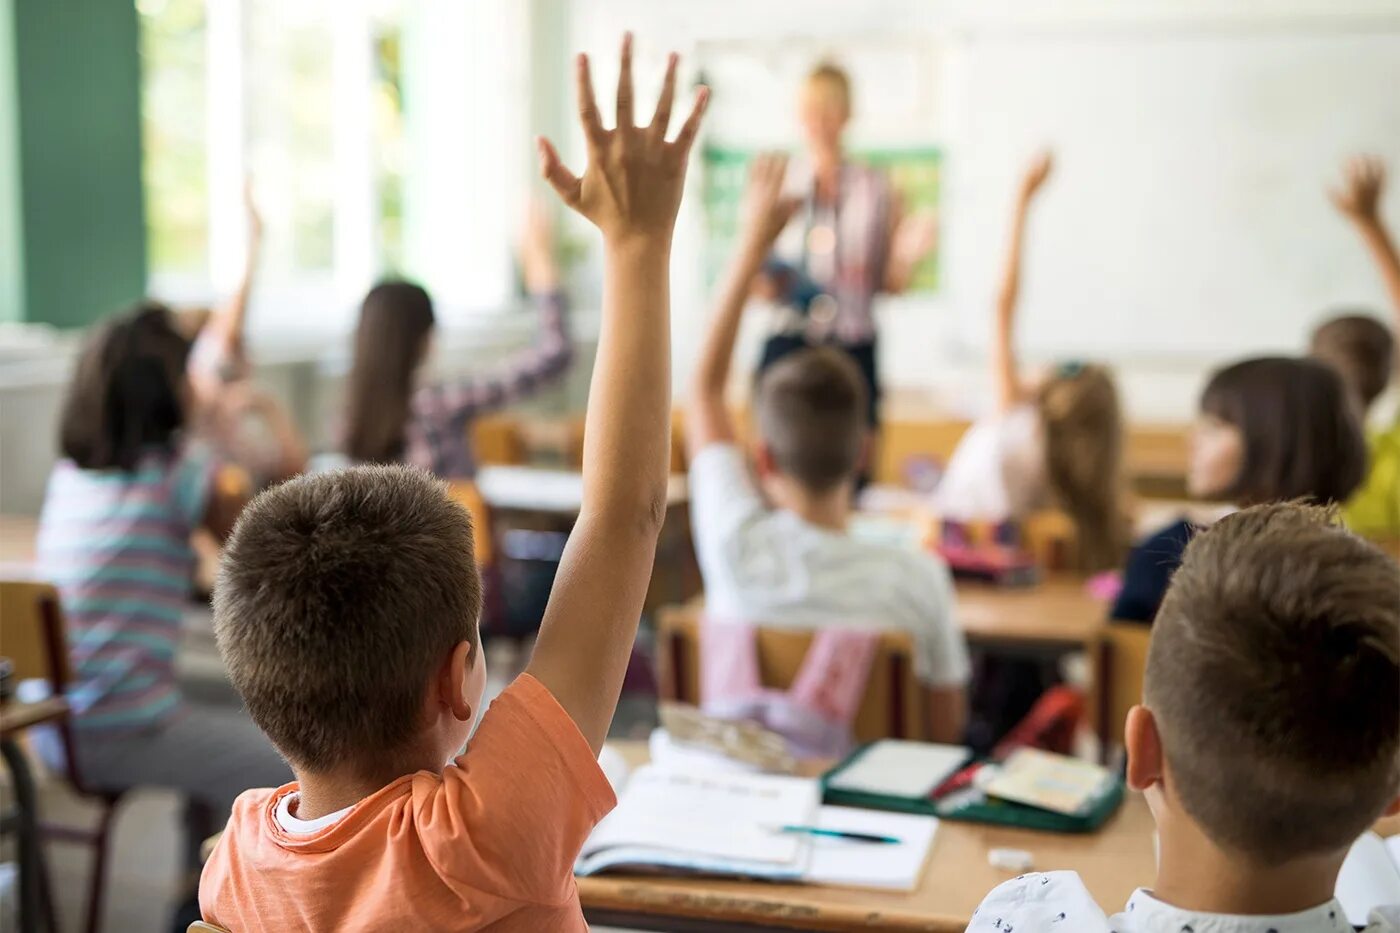 Дети на уроке. Дети в школе поднимают руки. Школьники в классе. Поднятая рука на уроке.